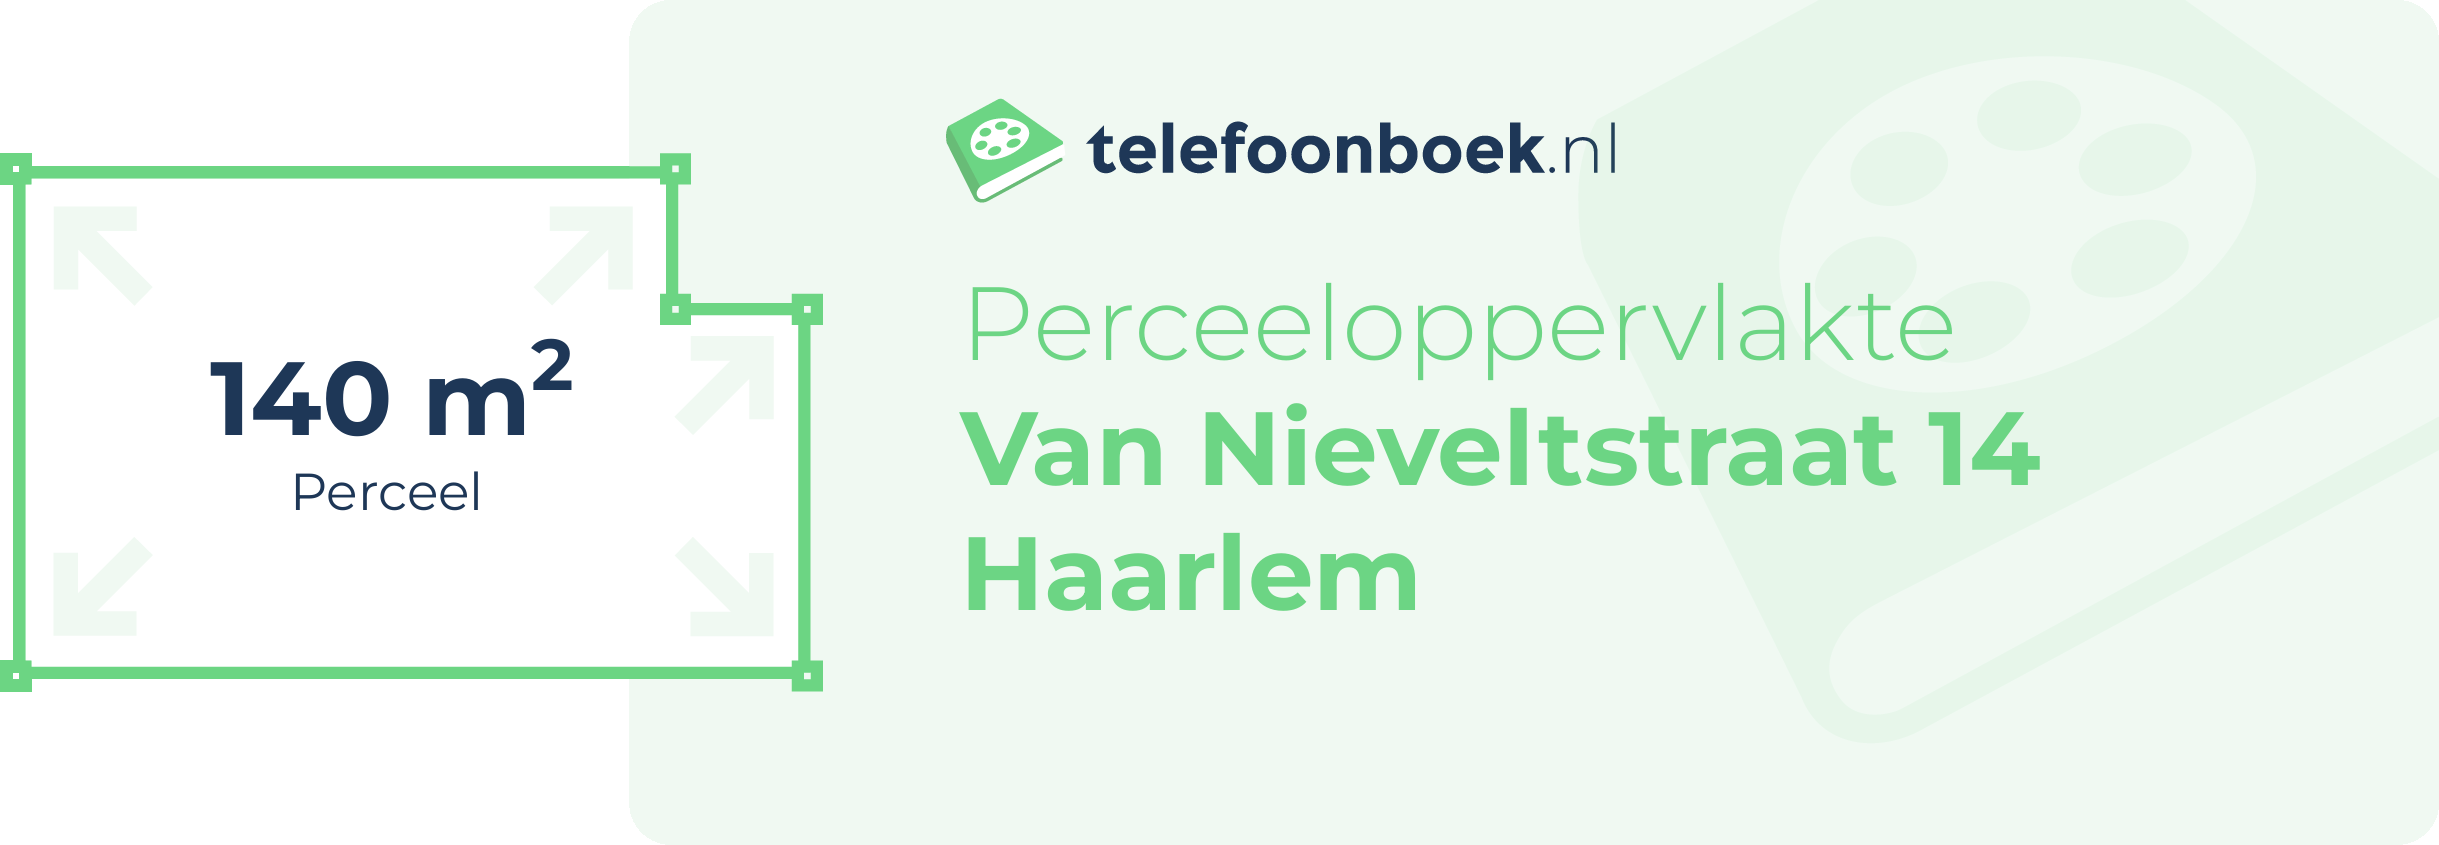 Perceeloppervlakte Van Nieveltstraat 14 Haarlem